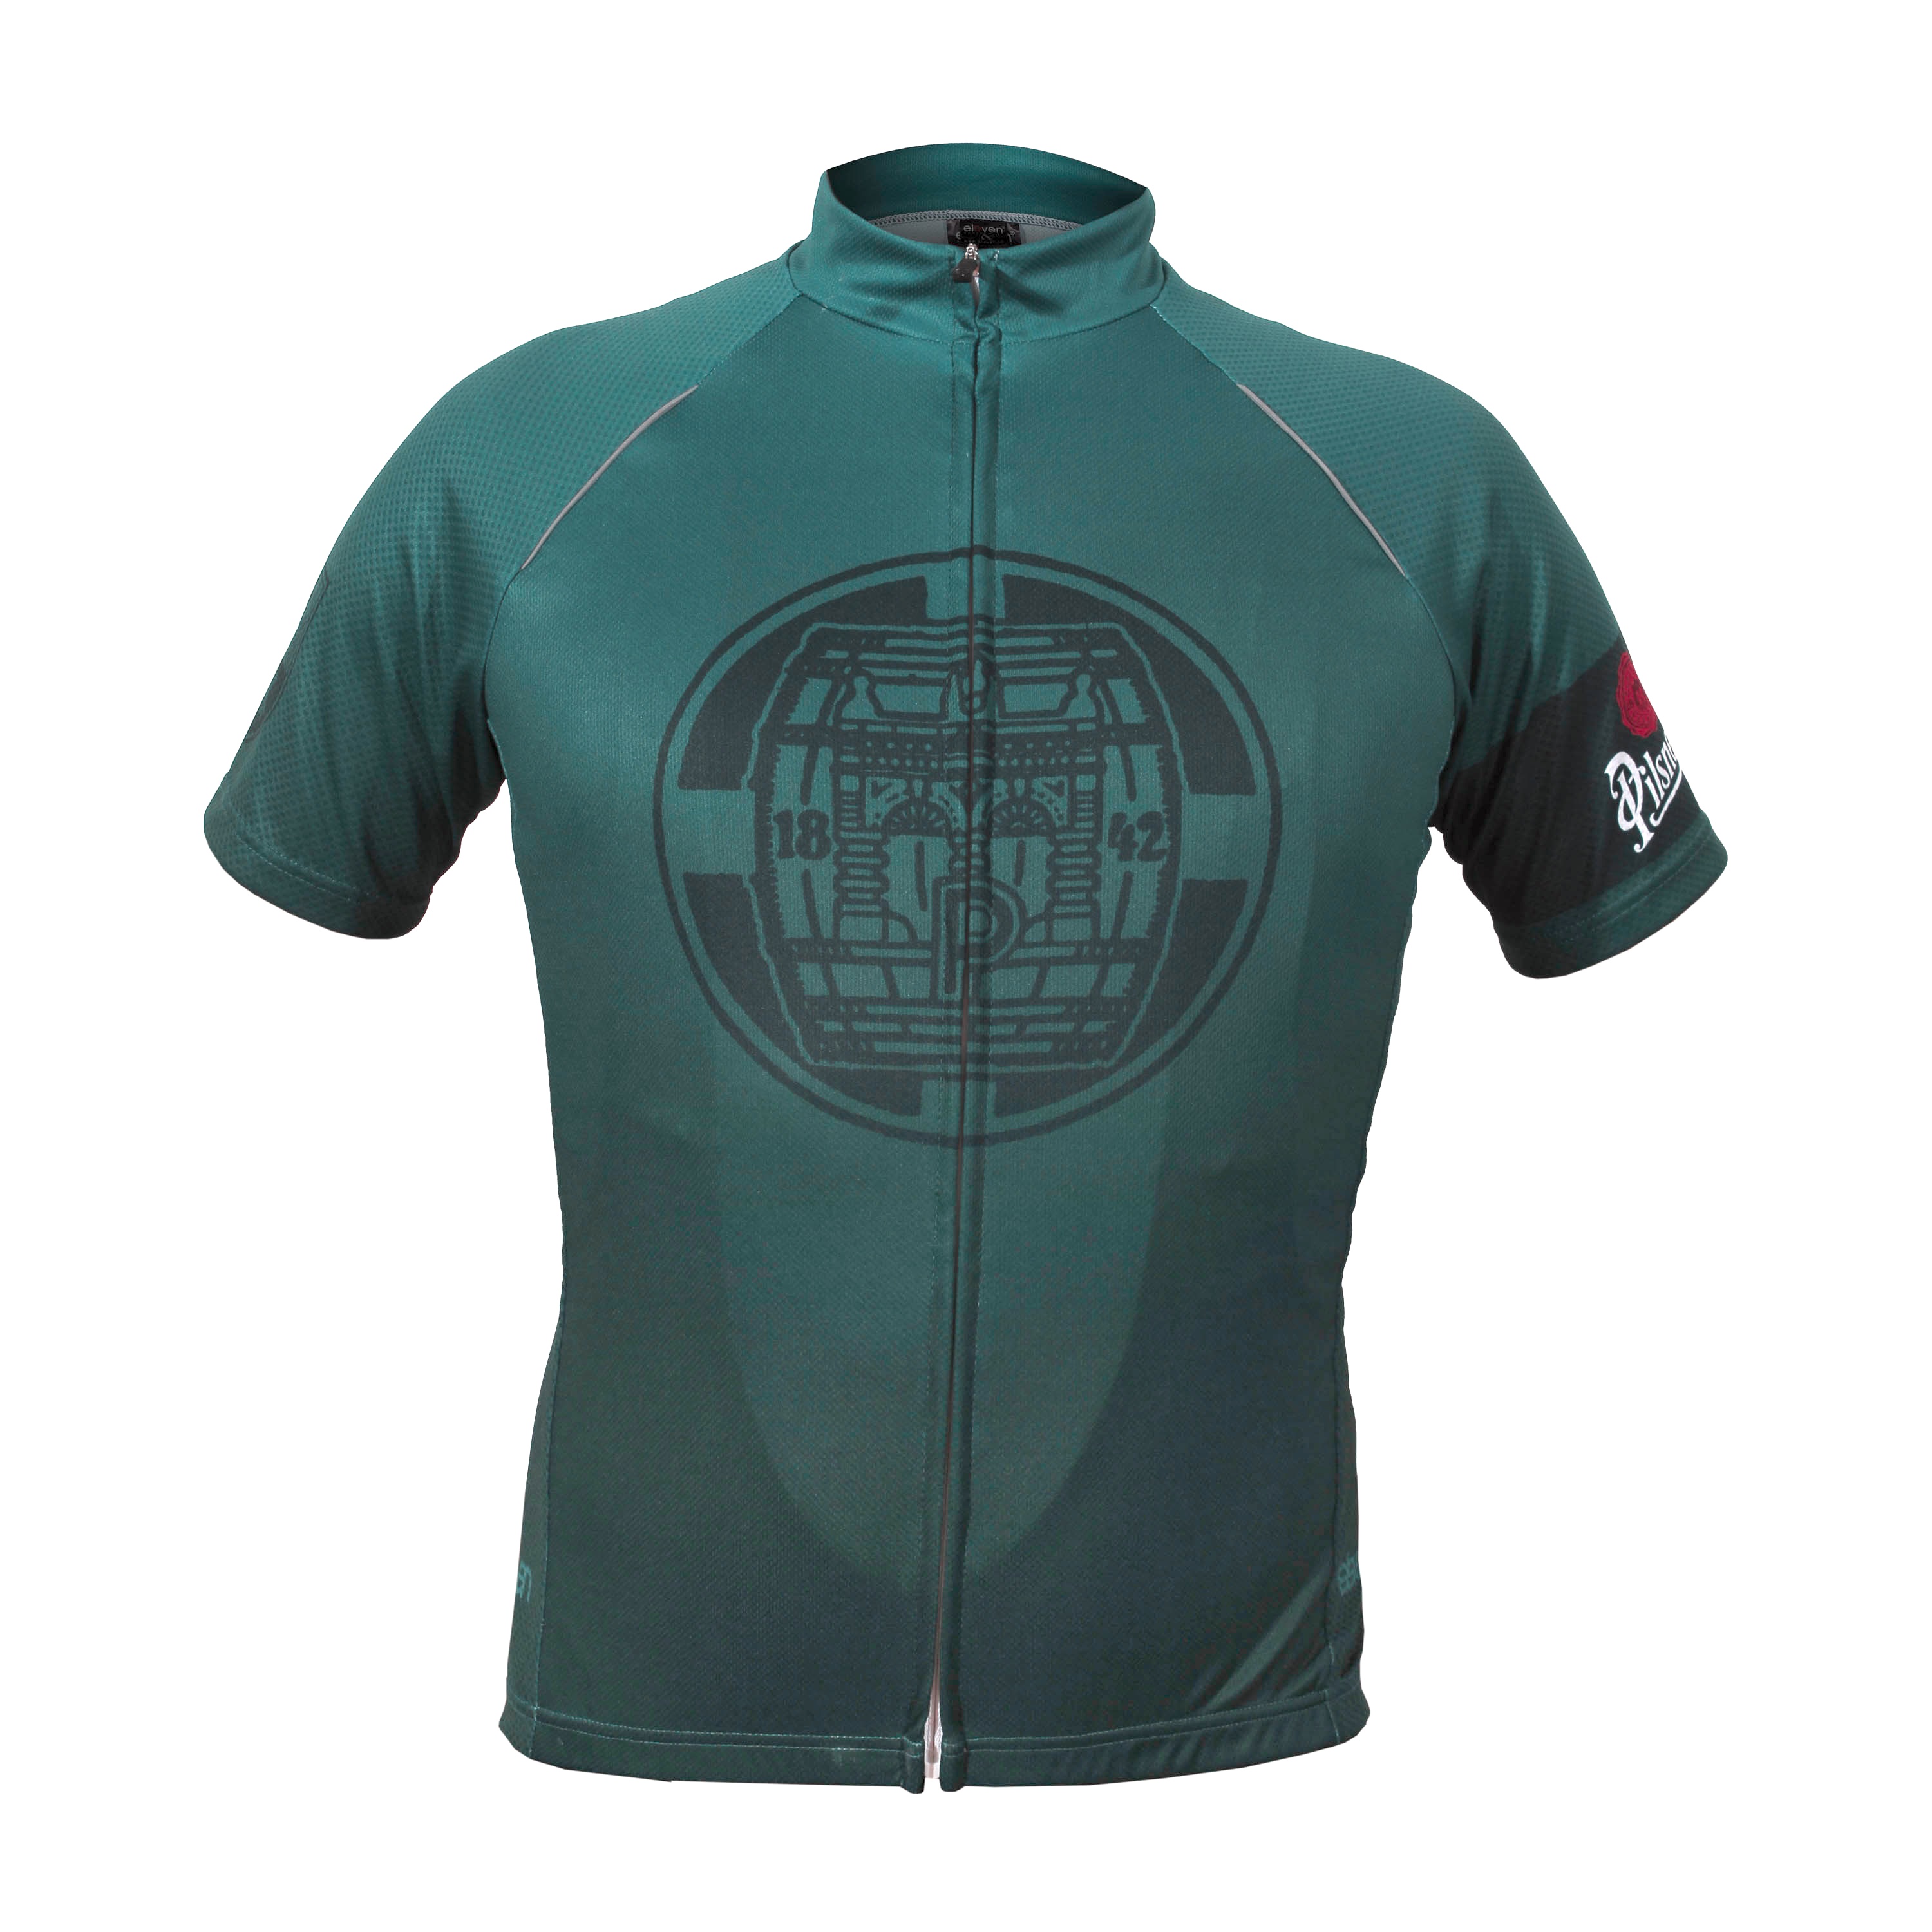 Men’s Pilsner Urquell cycling jersey dark green